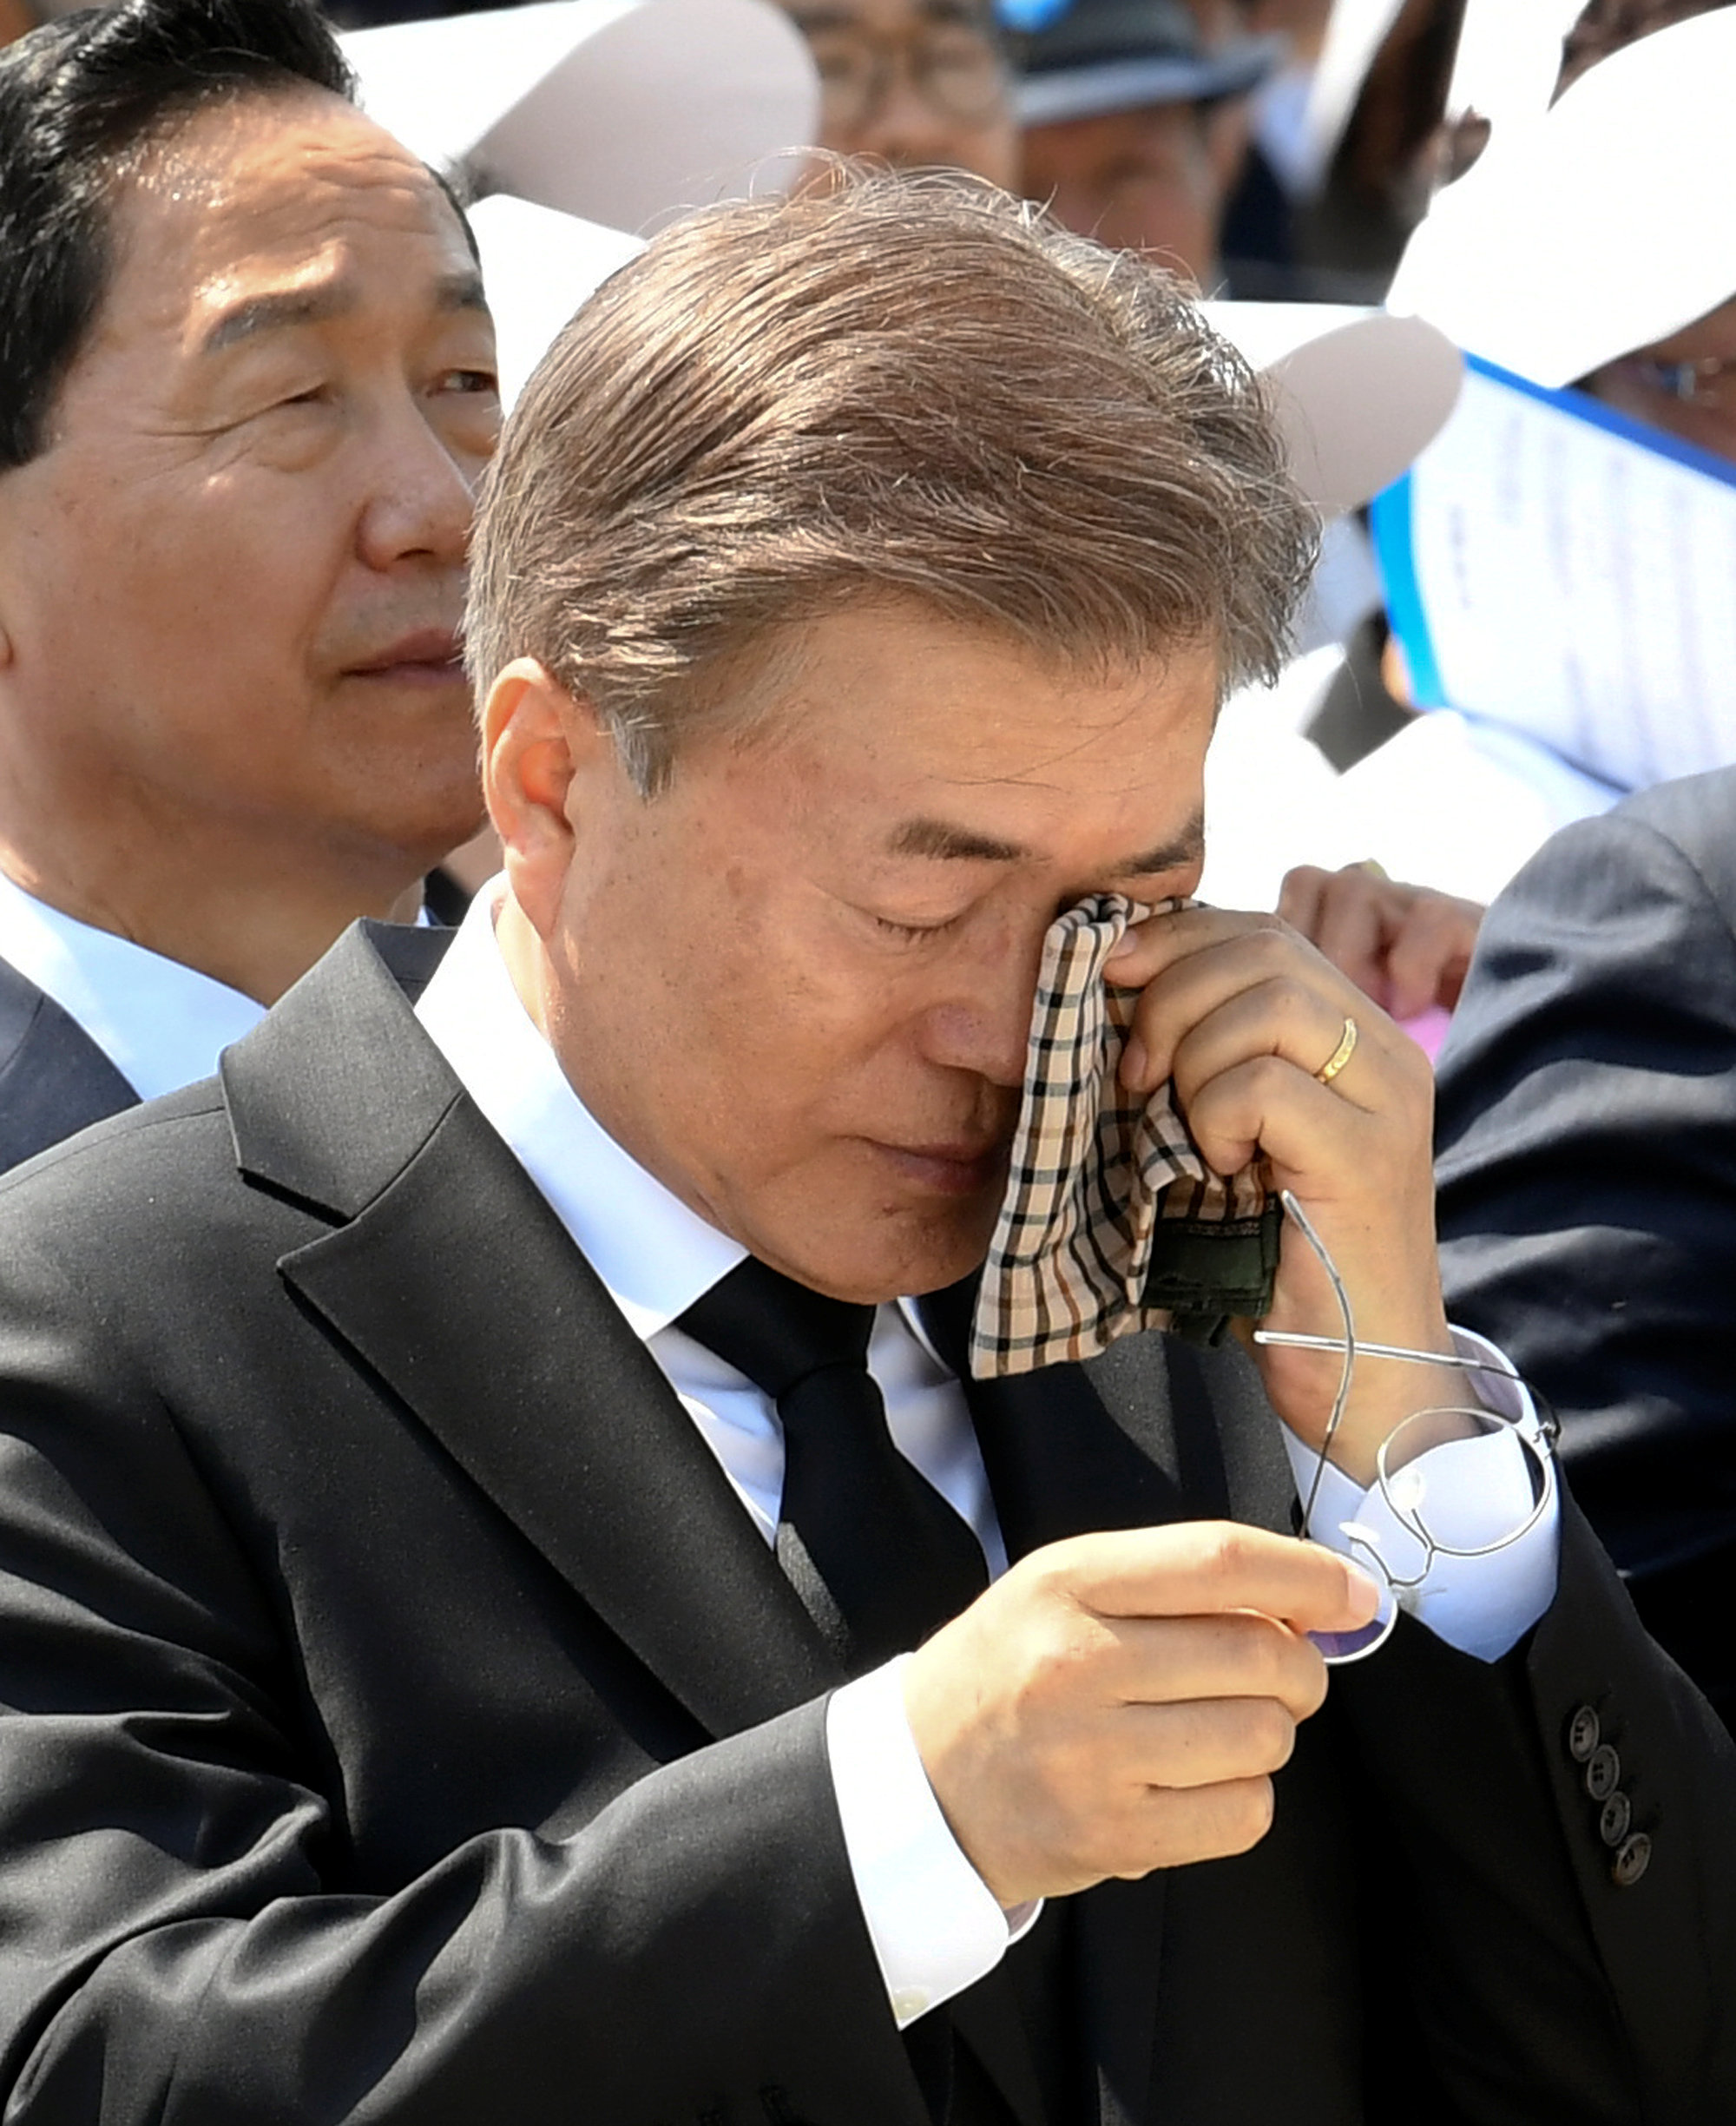 رئيس كوريا الجنوبية يشهد مراسم ذكرى حركة 18 مايو الديمقراطية بمشاركة 10 الآف شخص